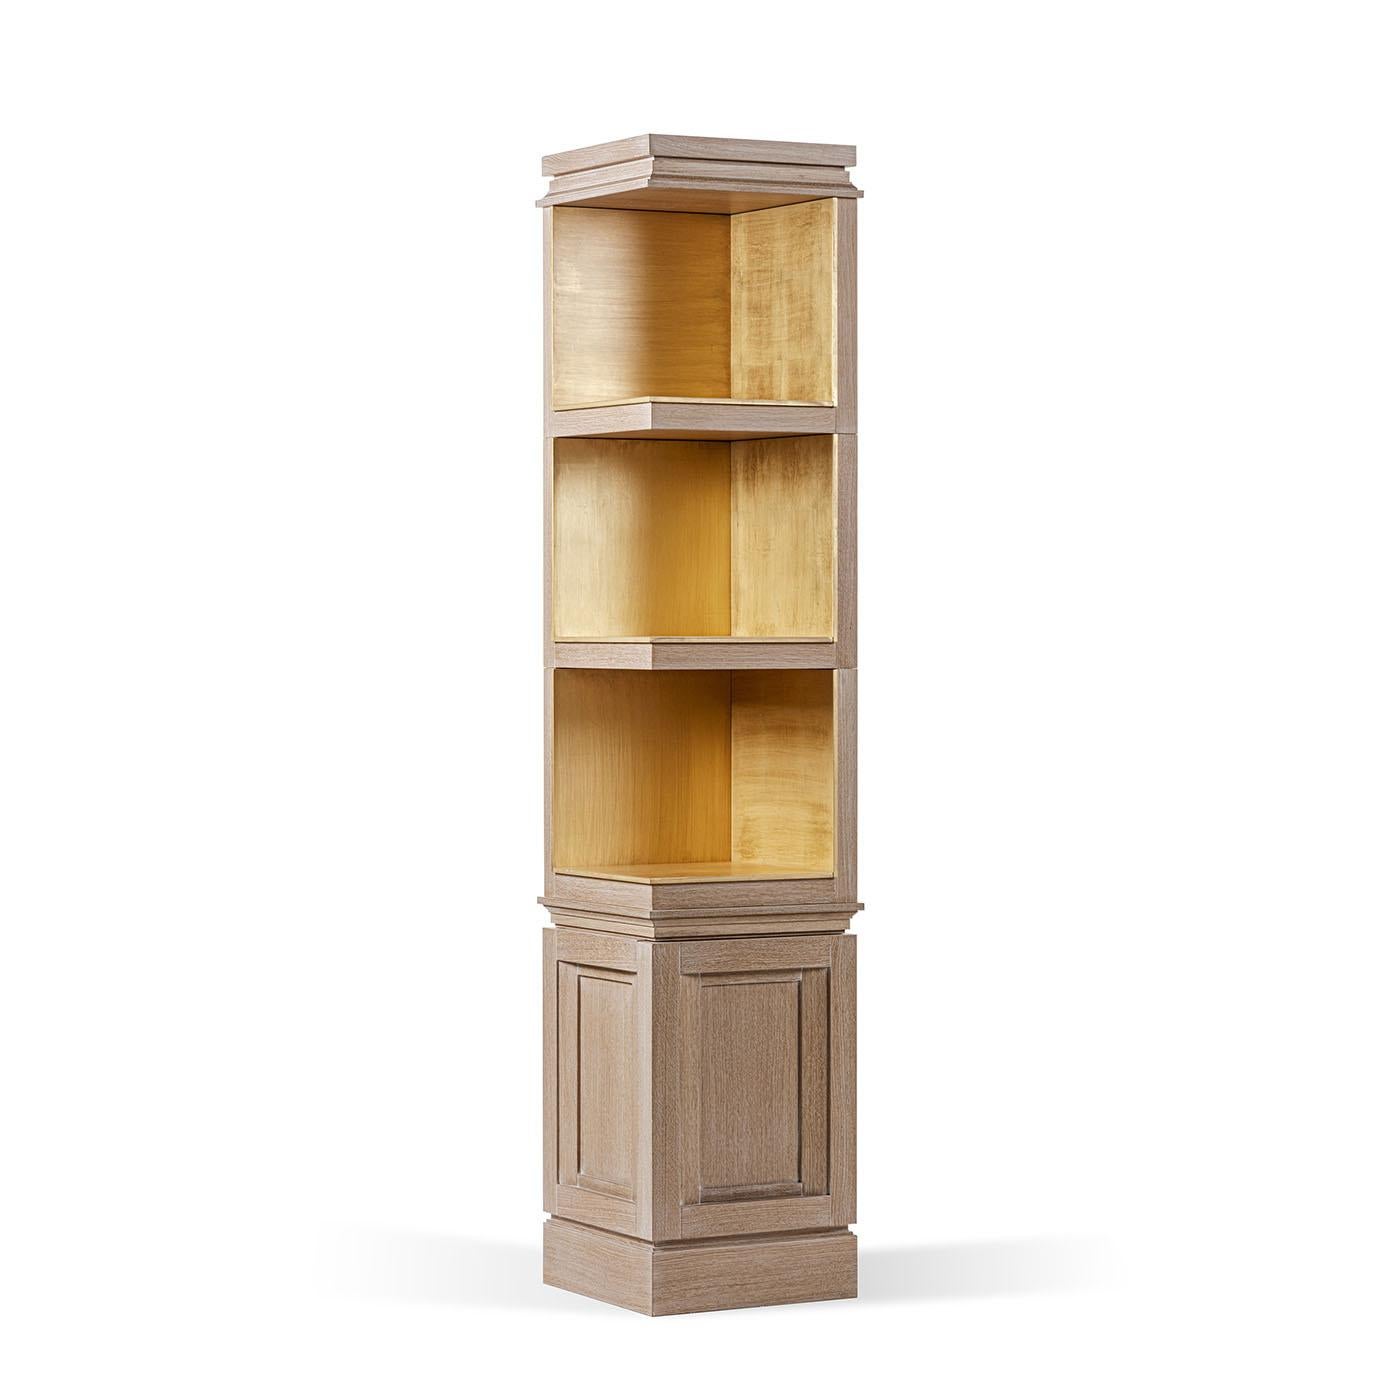 La bibliothèque laquée Akiba Oak, fabriquée de manière experte en bois de chêne lustré, affiche un design épuré et sophistiqué, rehaussé par sa composition modulaire, permettant une polyvalence et une adaptabilité à tous les besoins de rangement.